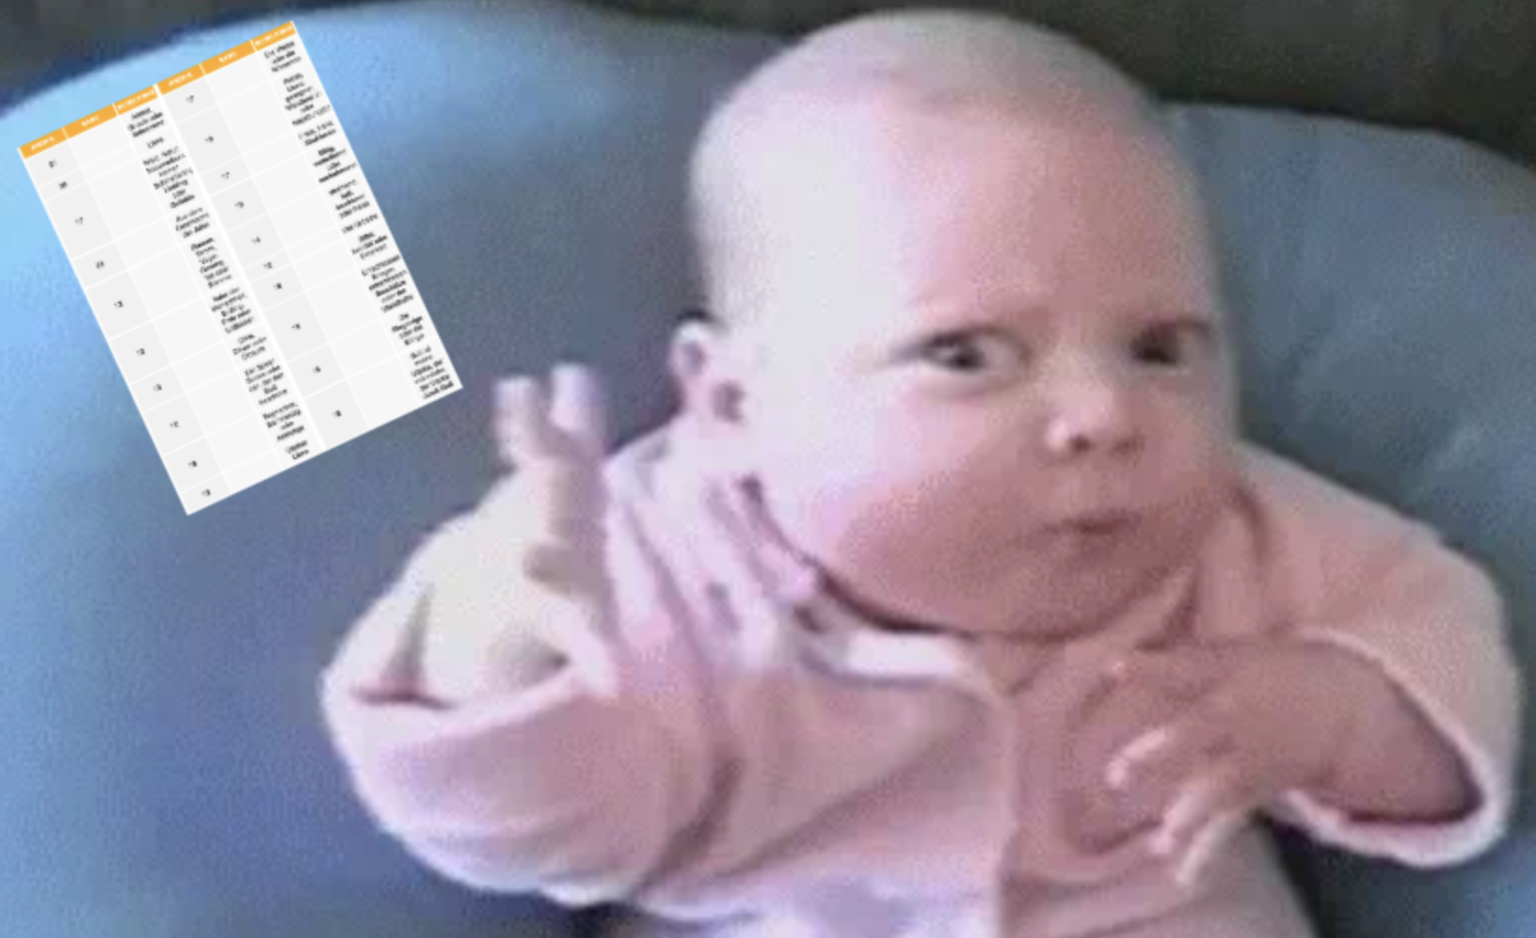 Dieses Baby verurteilt seine Eltern, weil es einen lustigen Namen bekommen hat.